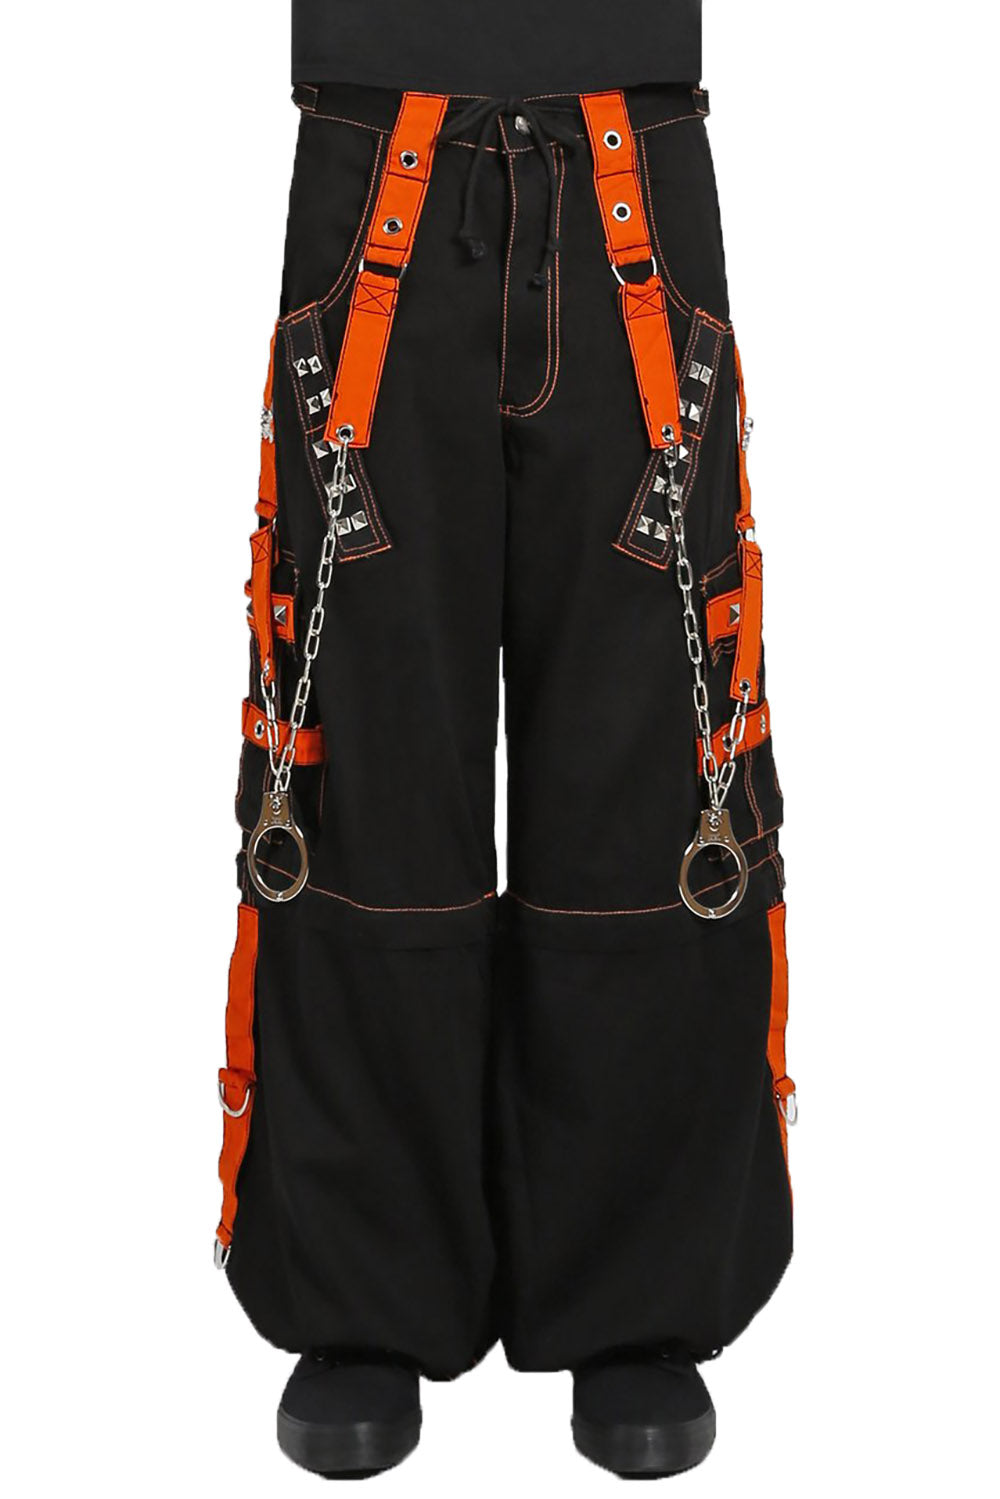 Tripp Lockup Pants [Black/Orange]